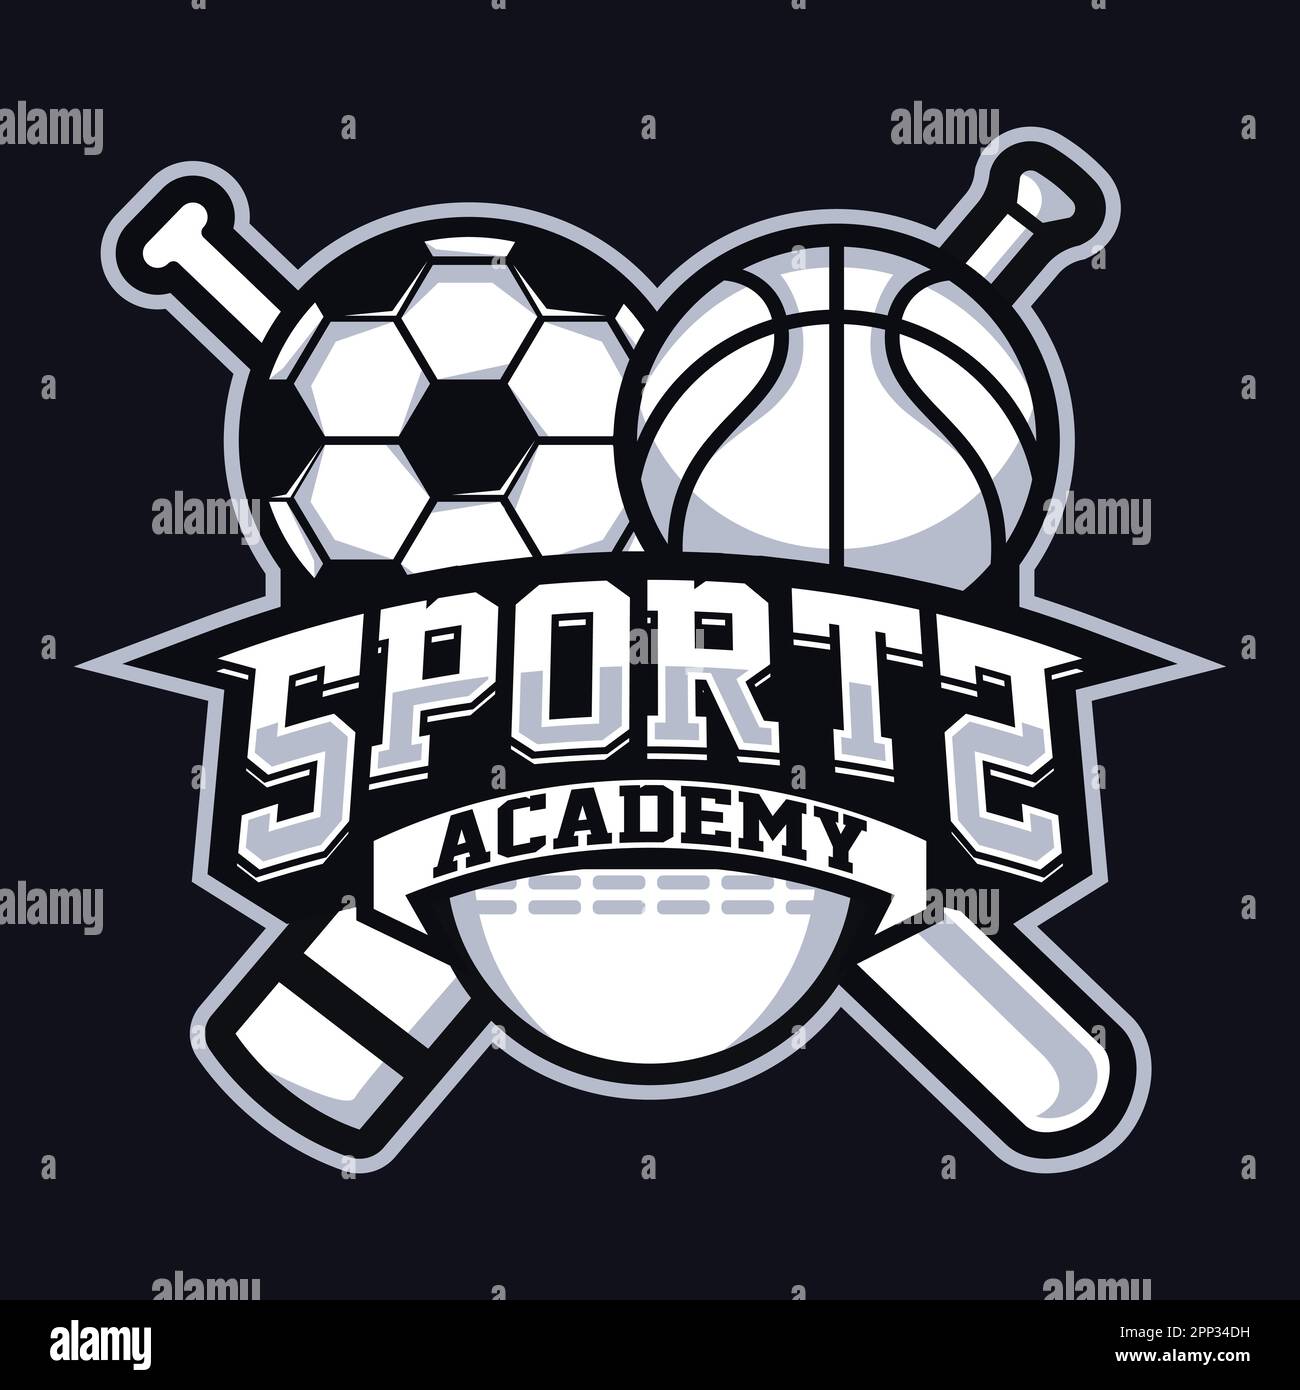 Sports Academy Mascot Logo Design Stock Vector